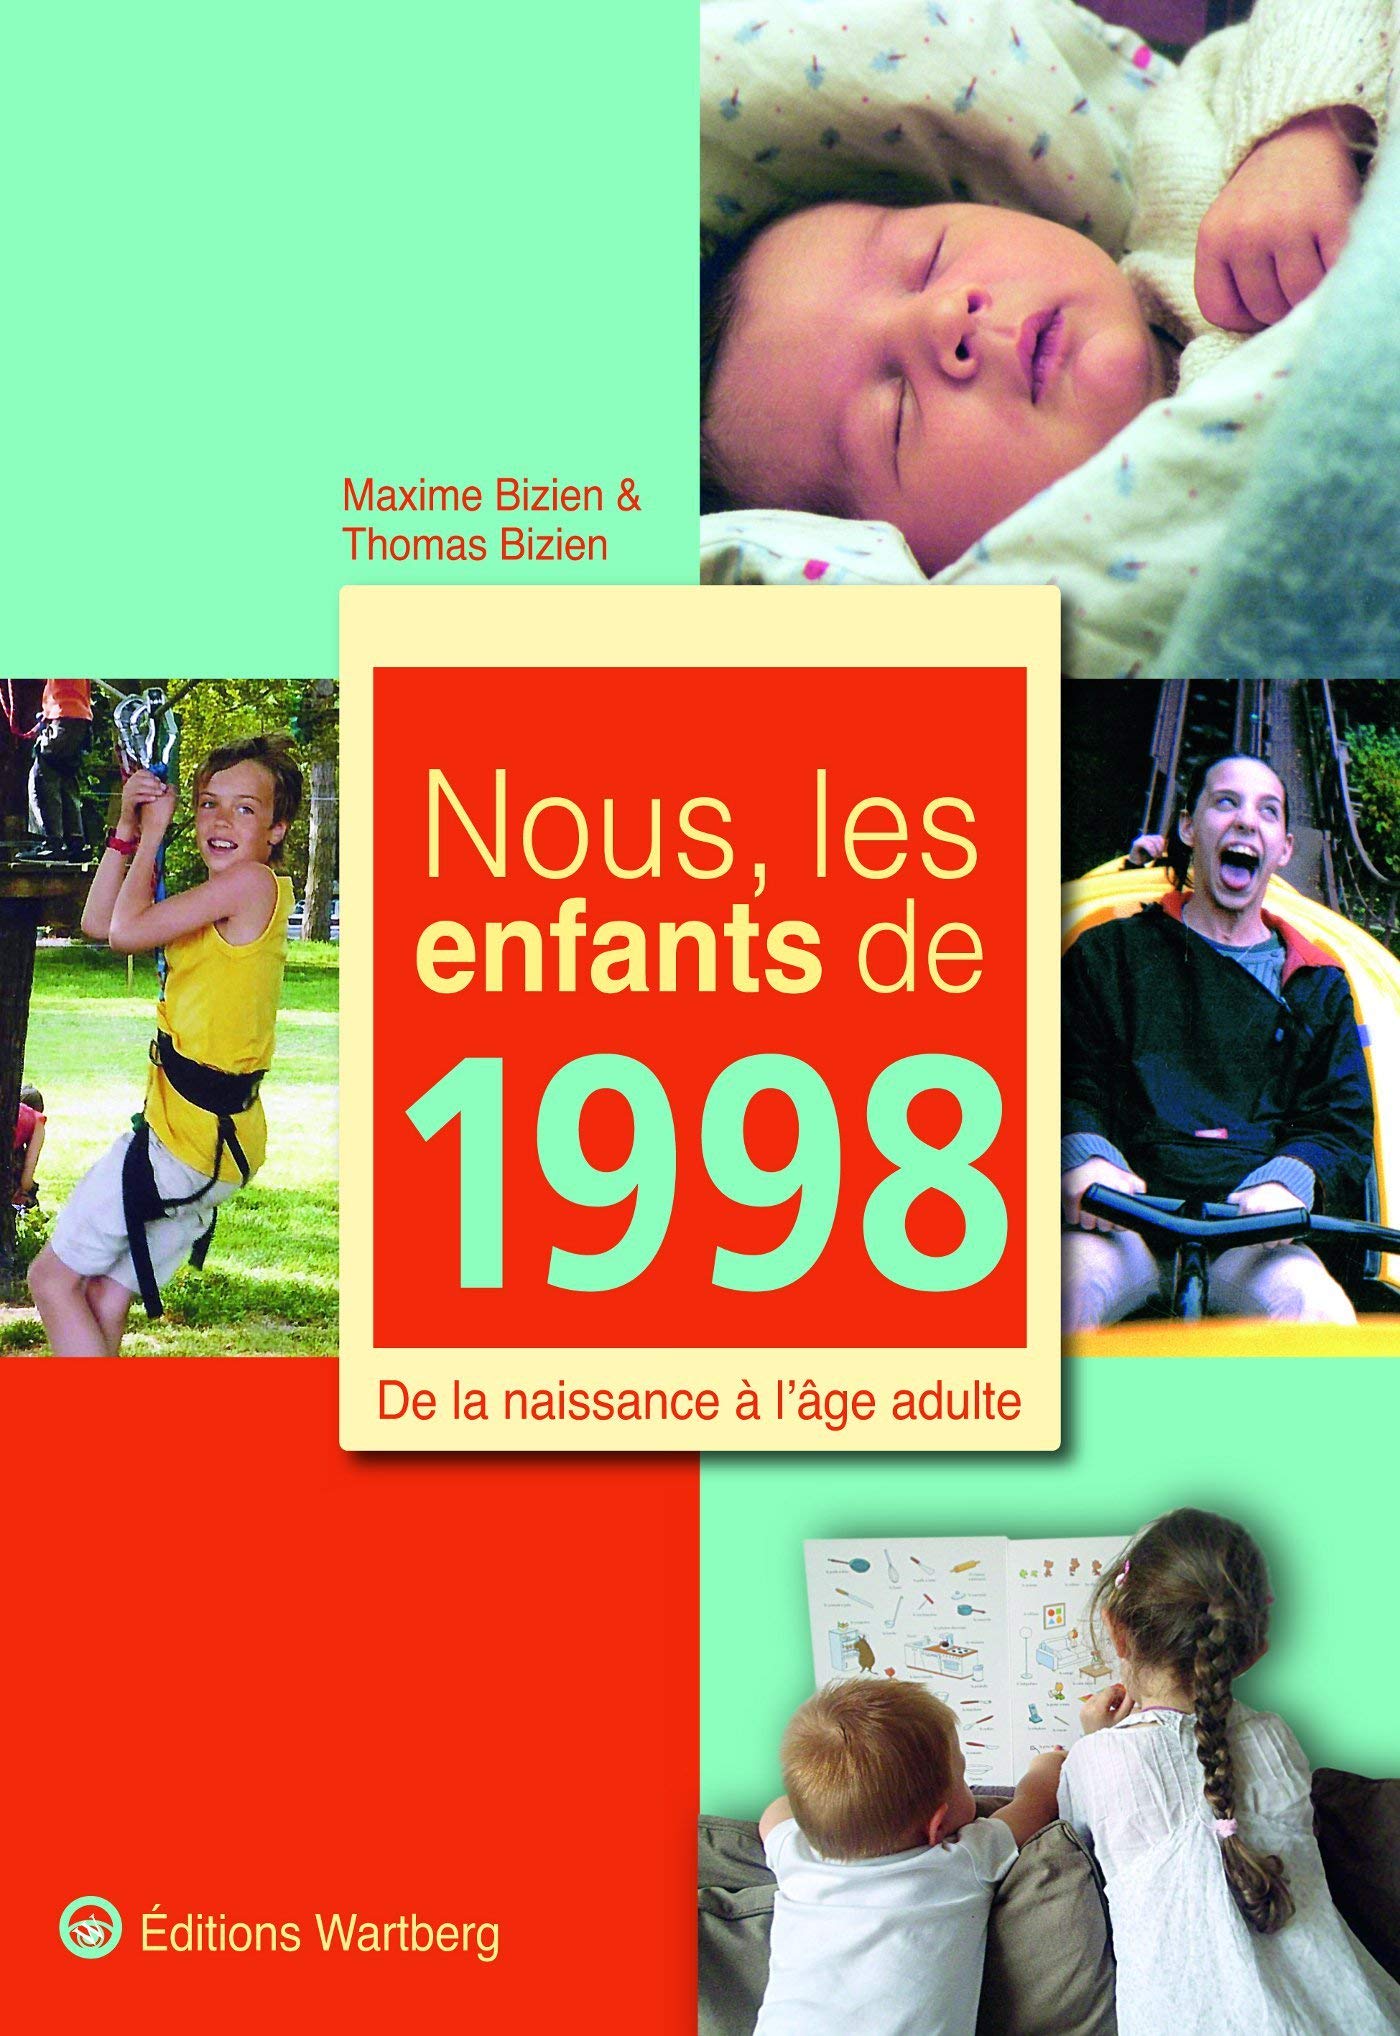 Nous, les enfants de 1998: De la naissance à l'âge adulte